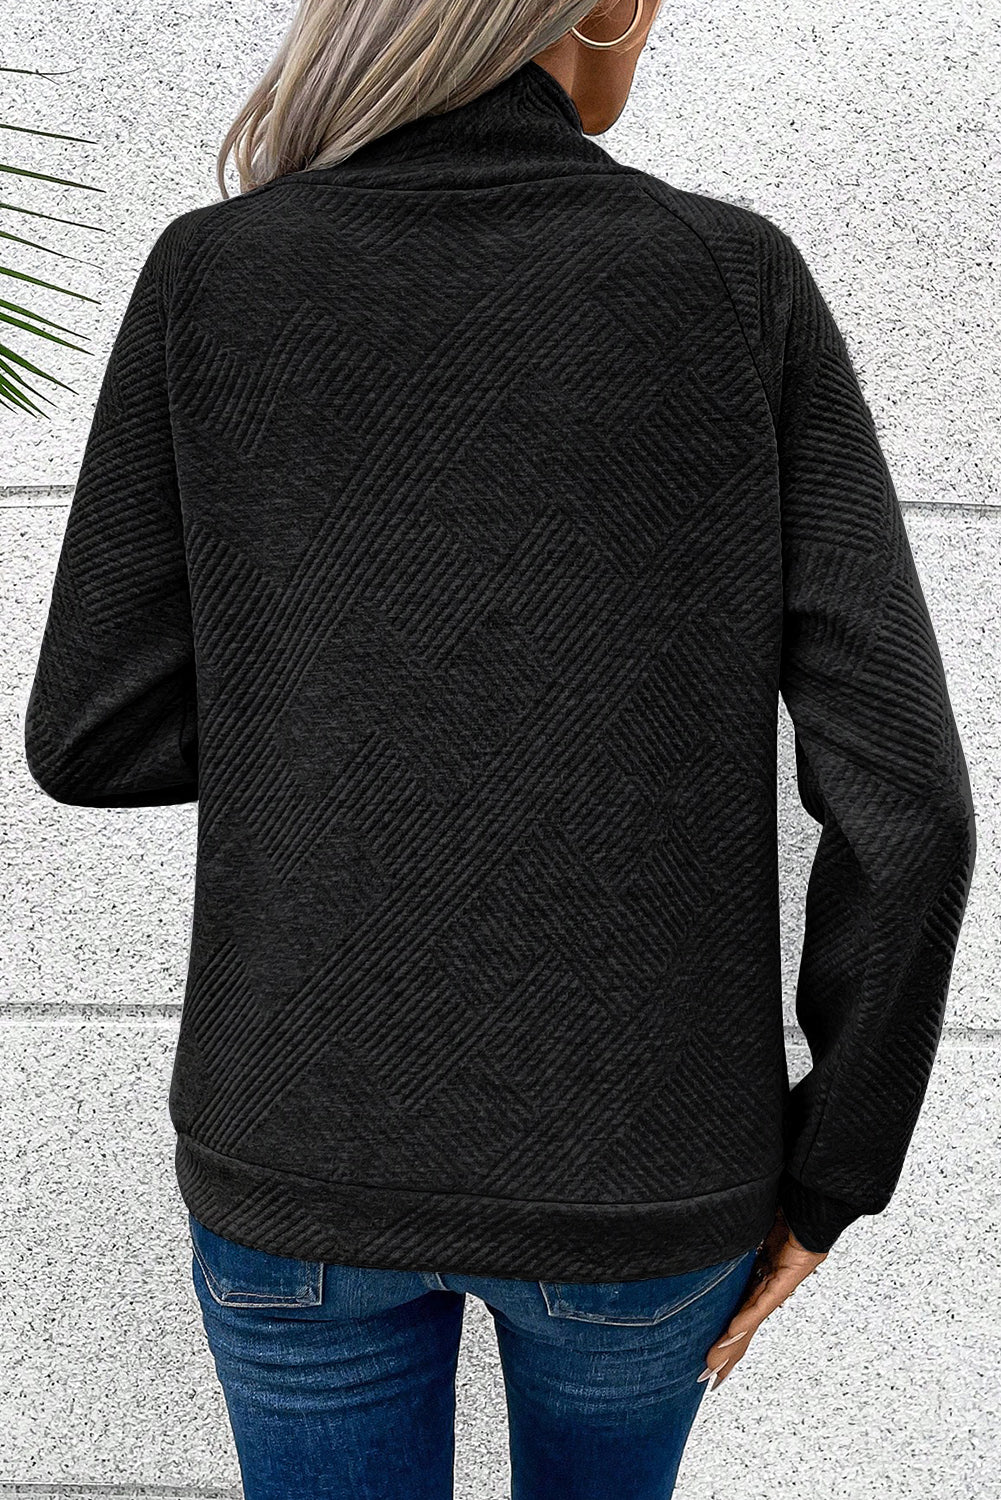 Črn pulover z asimetričnimi gumbi in visokim ovratnikom